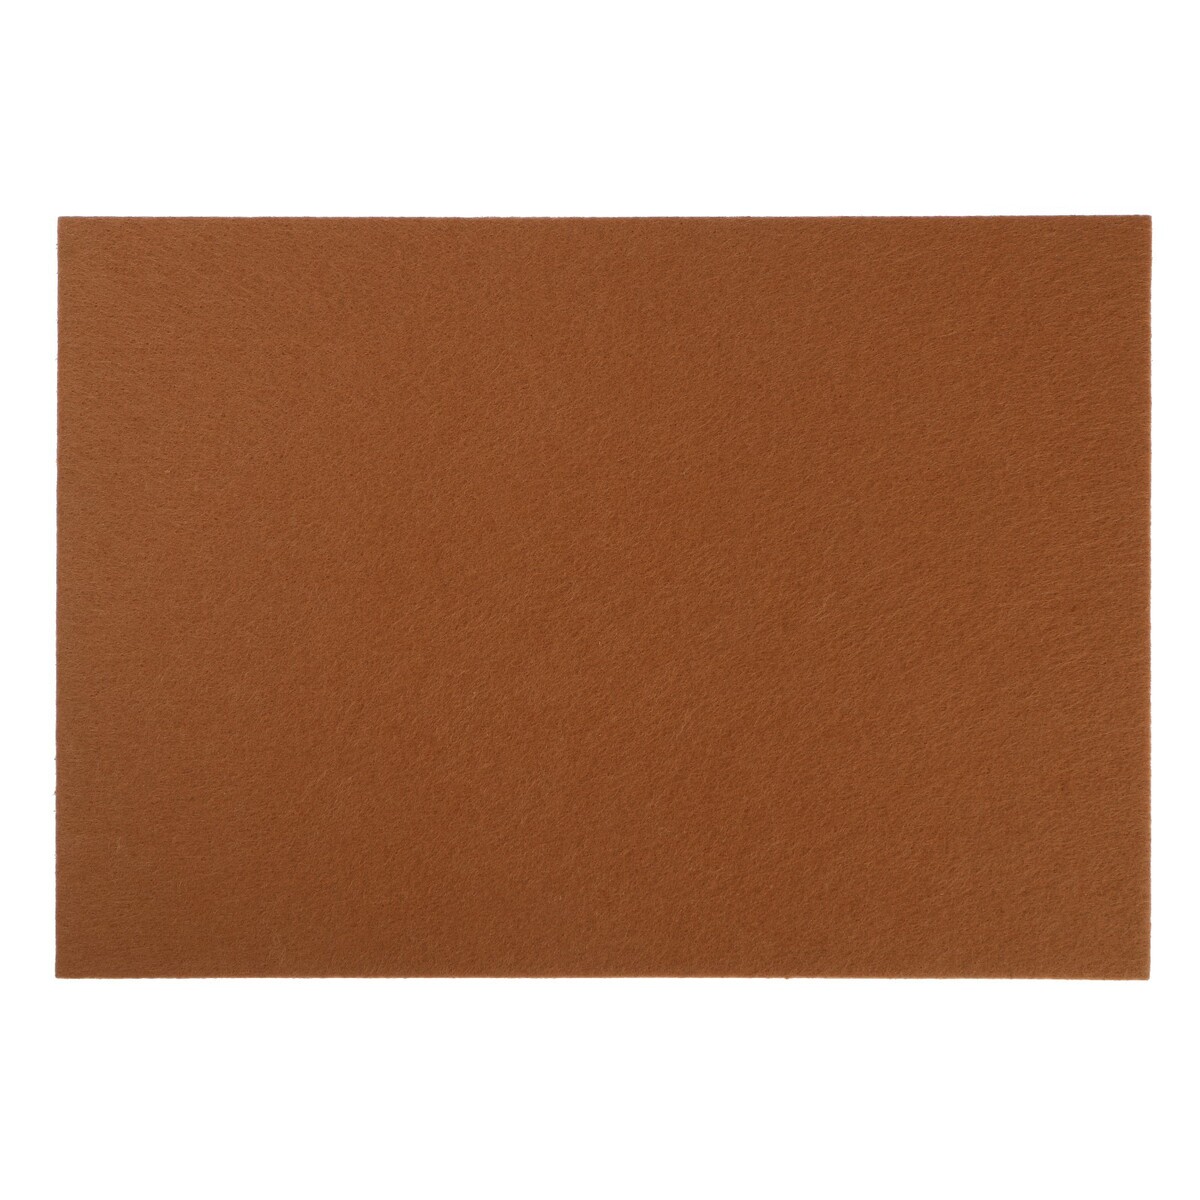 Накладка для мебели из войлока, 210х300 мм, клейкая поверхность, цвет светло-коричневый накладка для мебели из войлока 210х300 мм клейкая поверхность светло коричневый